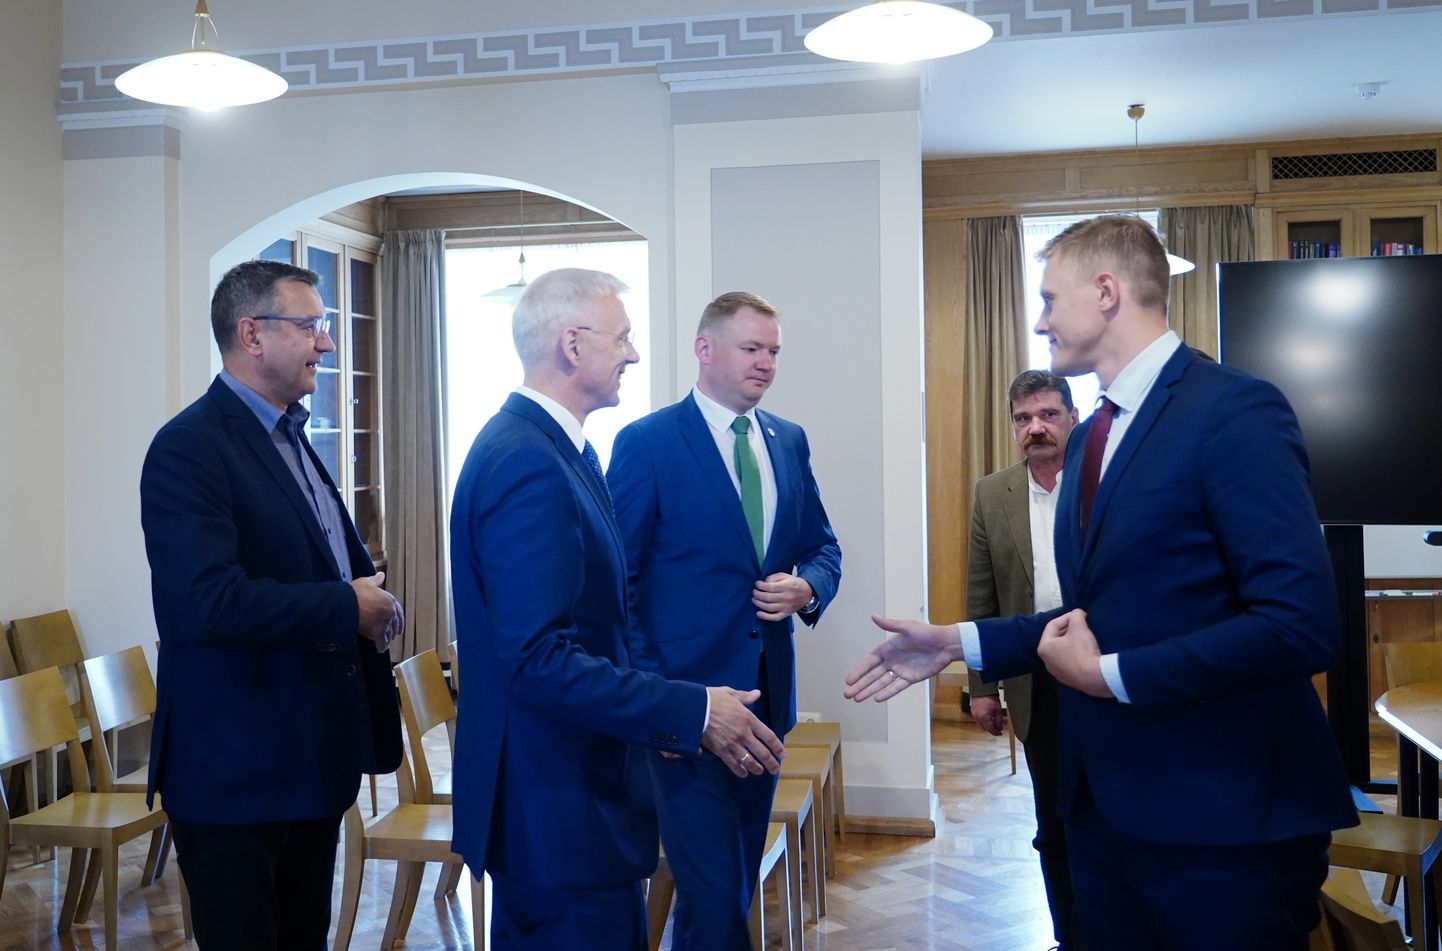 Partijas "Jaunā vienotība" pārstāvis, Saeimas deputāts Jānis Reirs (no kreisās), Ministru prezidents Krišjānis Kariņš, "Apvienotais saraksts" valdes līdzpriekšsēdētājs, Saeimas priekšsēdētājs Edvards Smiltēns, "Apvienotais saraksts" pārstāvis, Saeimas deputāts Ingmārs Līdaka un Nacionālās apvienības “Visu Latvijai!” – “Tēvzemei un Brīvībai/LNNK” pārstāvis, Saeimas deputāts Jānis Dombrava pirms tikšanās, kurā pārrunās valdības koalīcijas veidošanas gaitu.